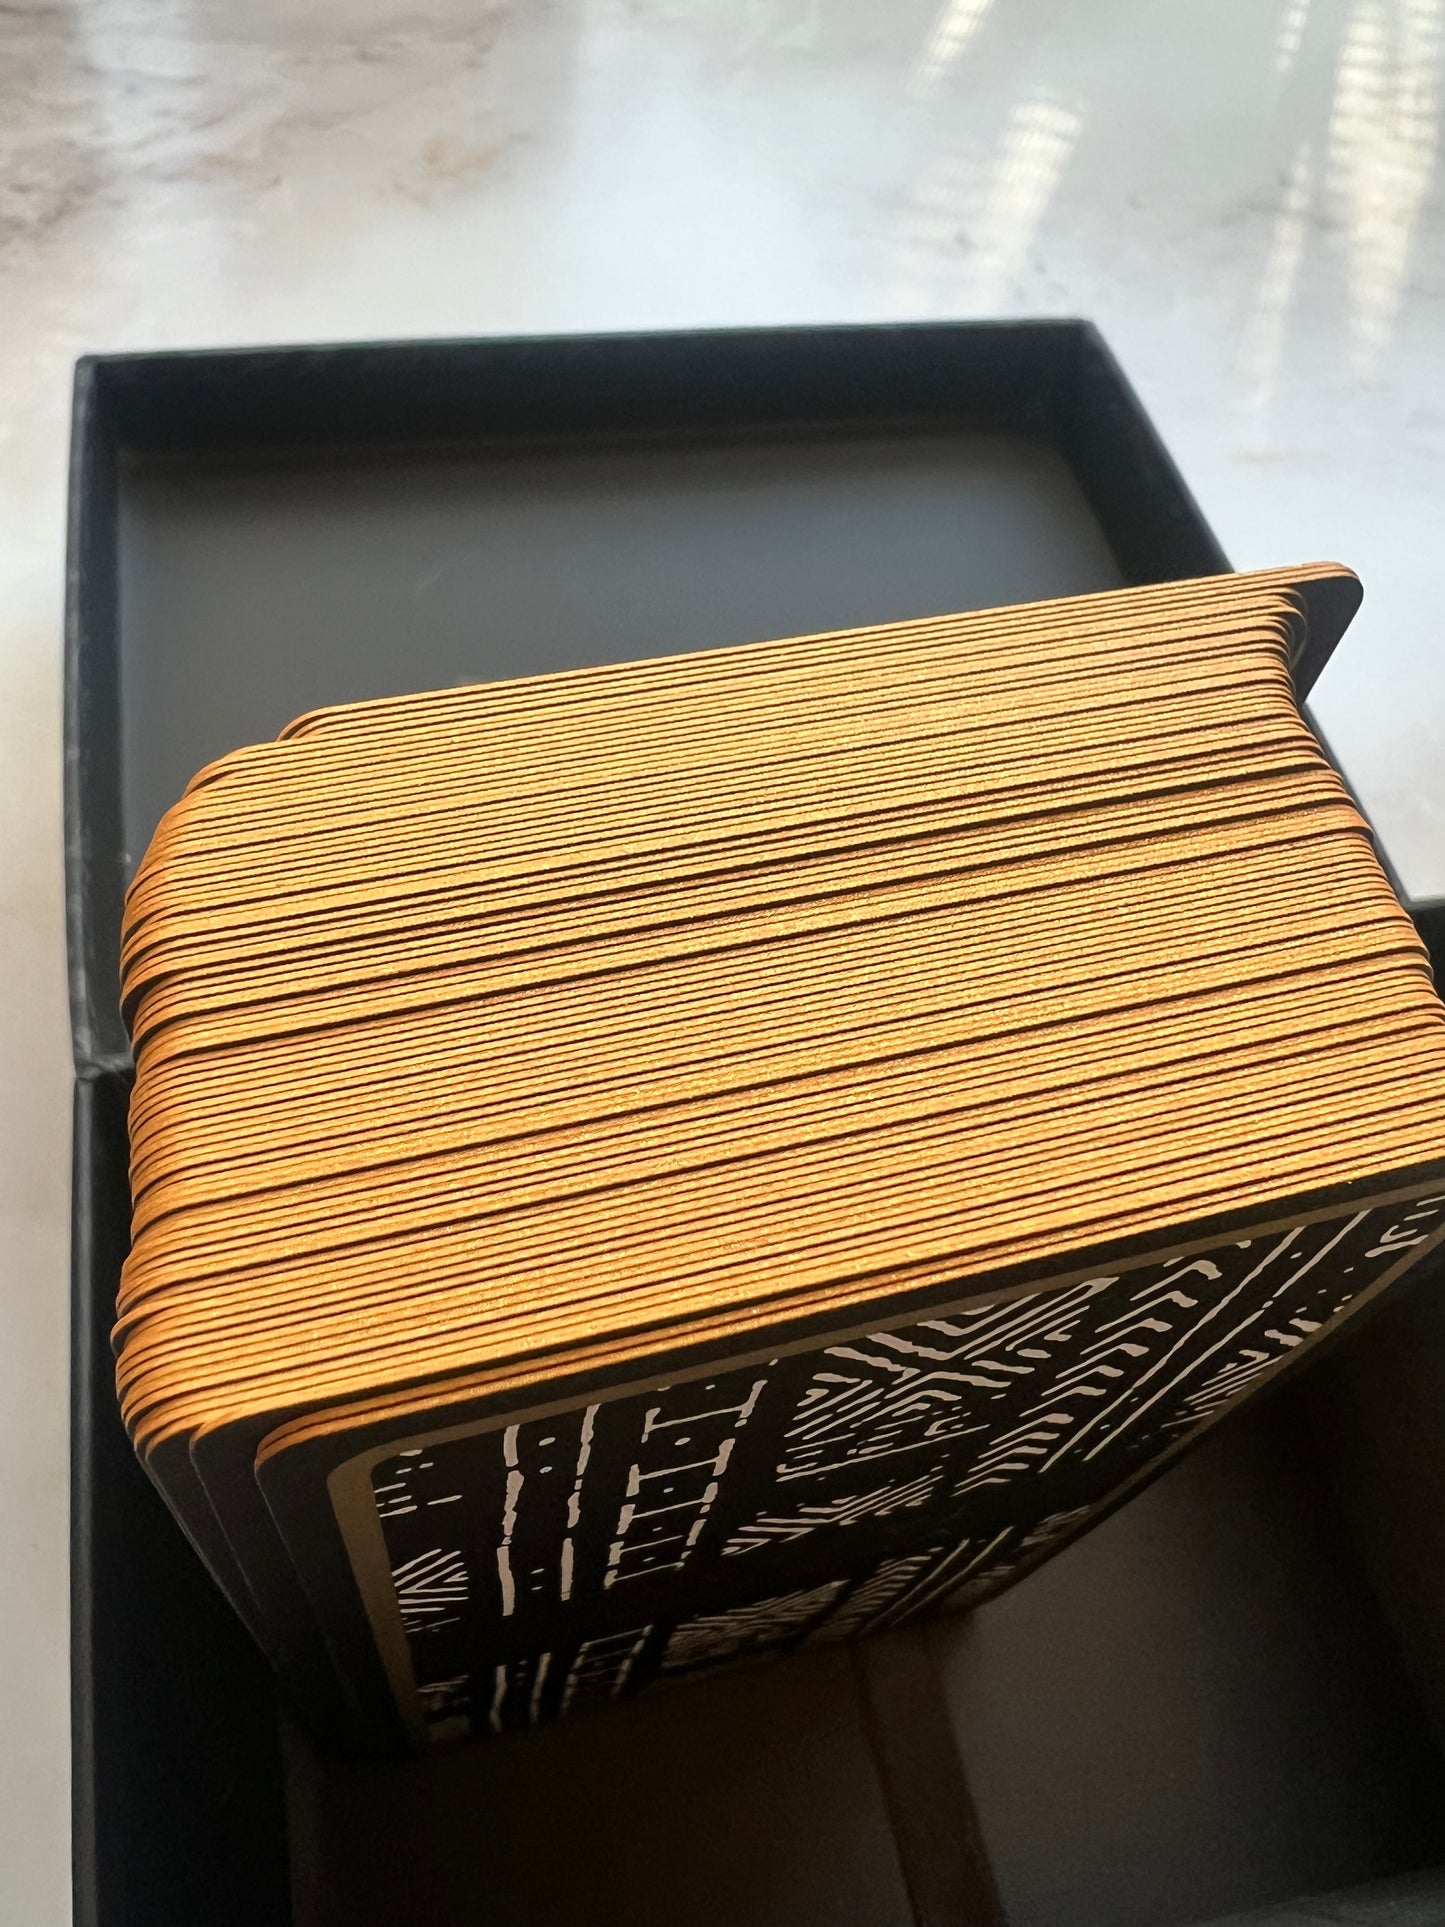 Tarot Deck Tarot Card Deck Tarot Cards Indie Tarot Deck Indie Tarot Decks Indie Deck Indie Decks